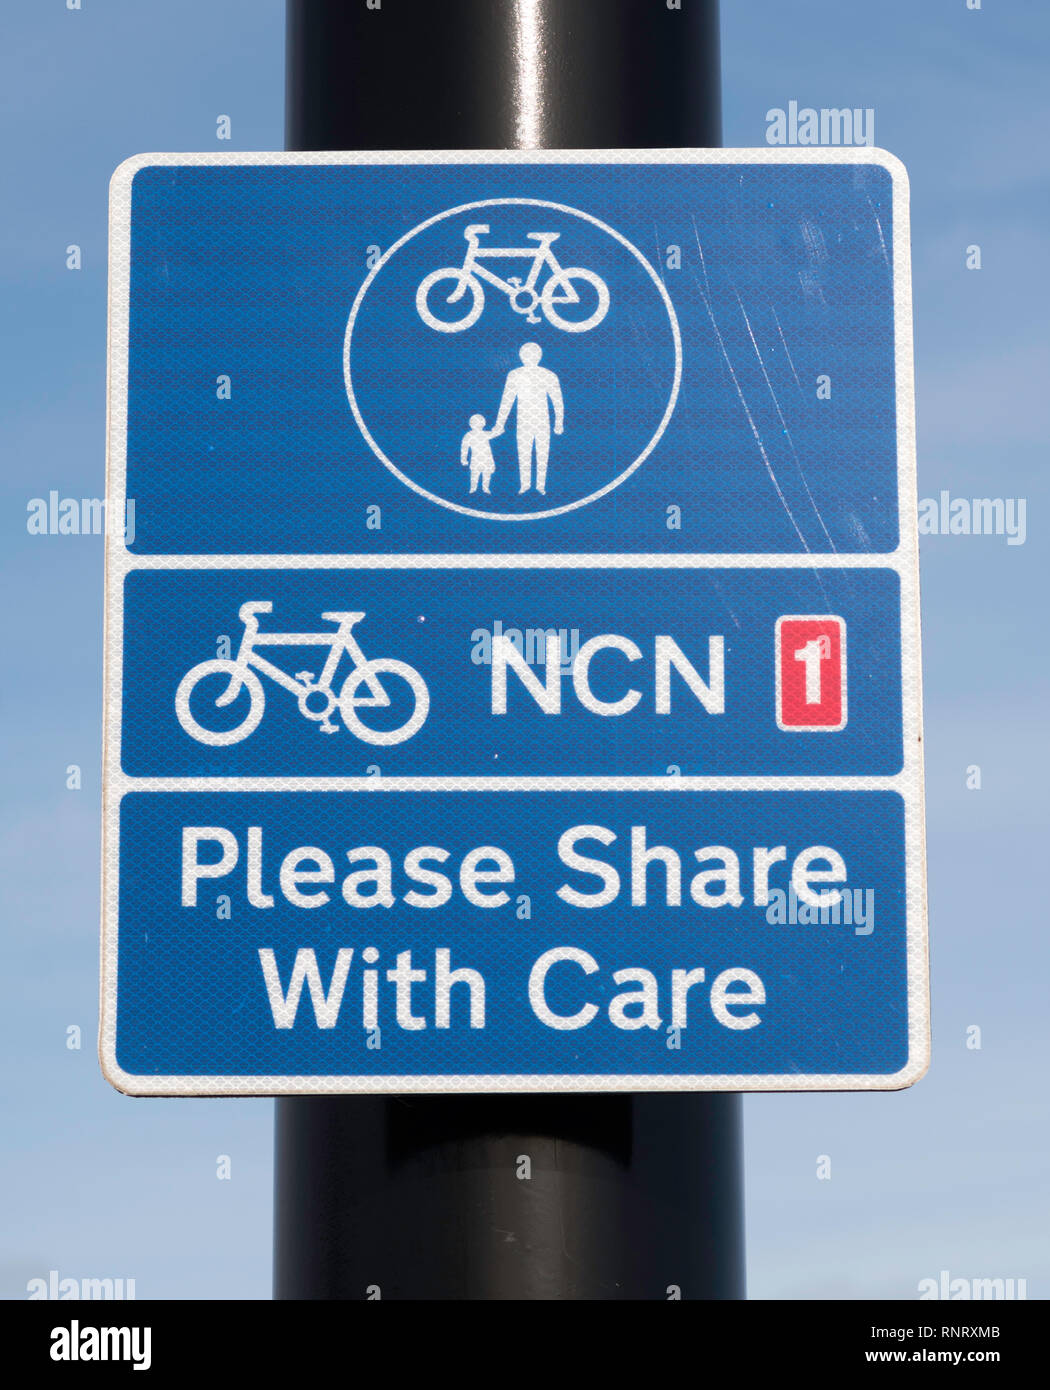 Inscrivez-vous sur Réseau National Cycle 1 Cycle d'utilisation partagée de la NCN et sentier piétonnier Veuillez partager avec soin, dans le nord-est de Tynemouth, England, UK Banque D'Images